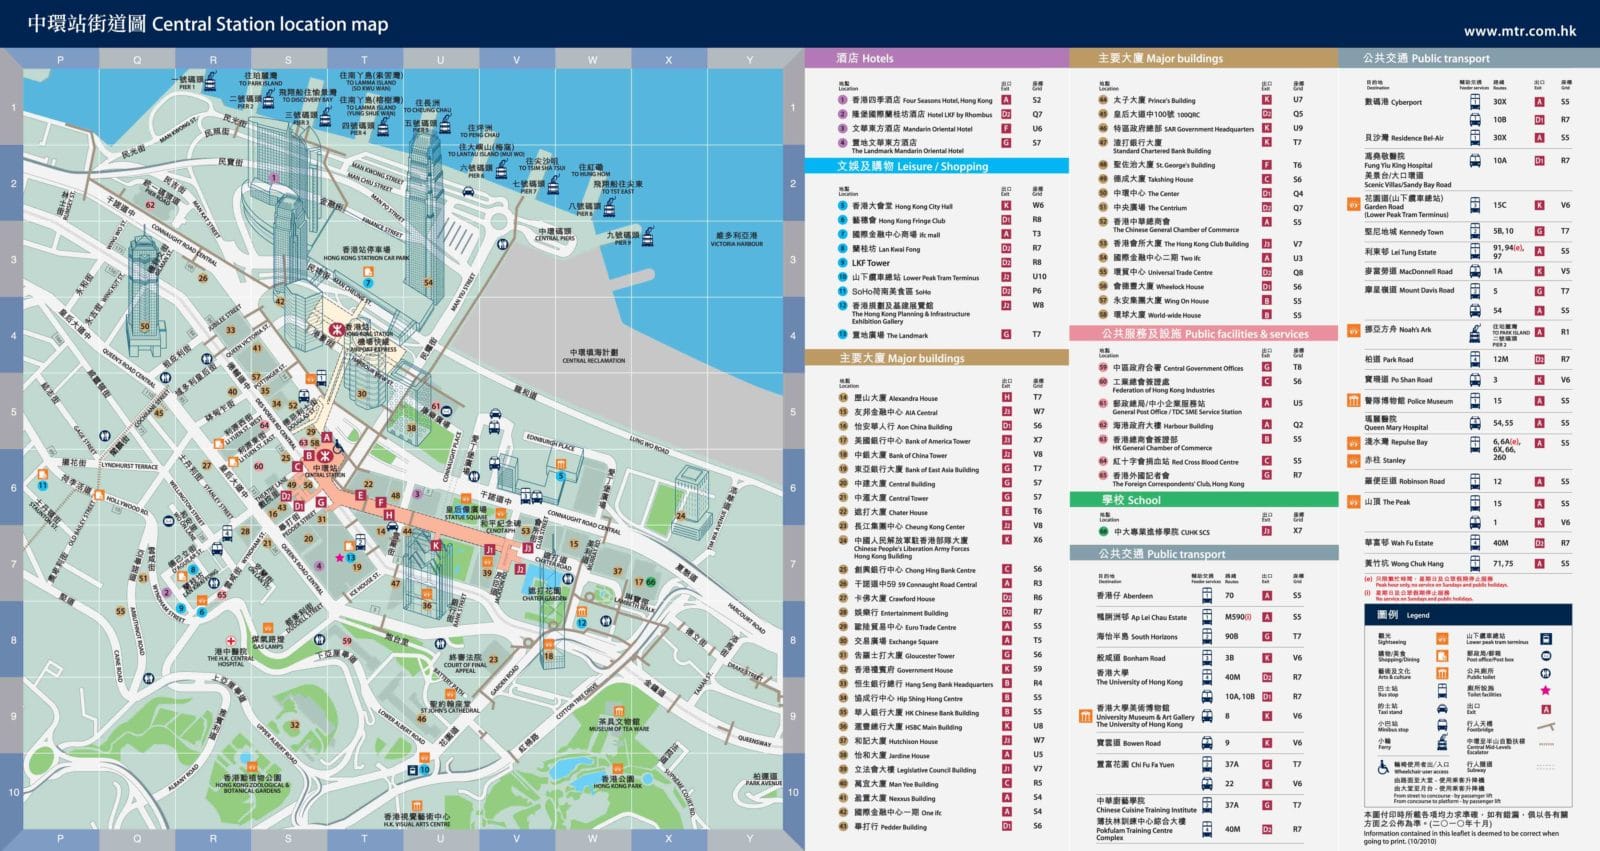 香港:中环地铁站区域图2012-2013